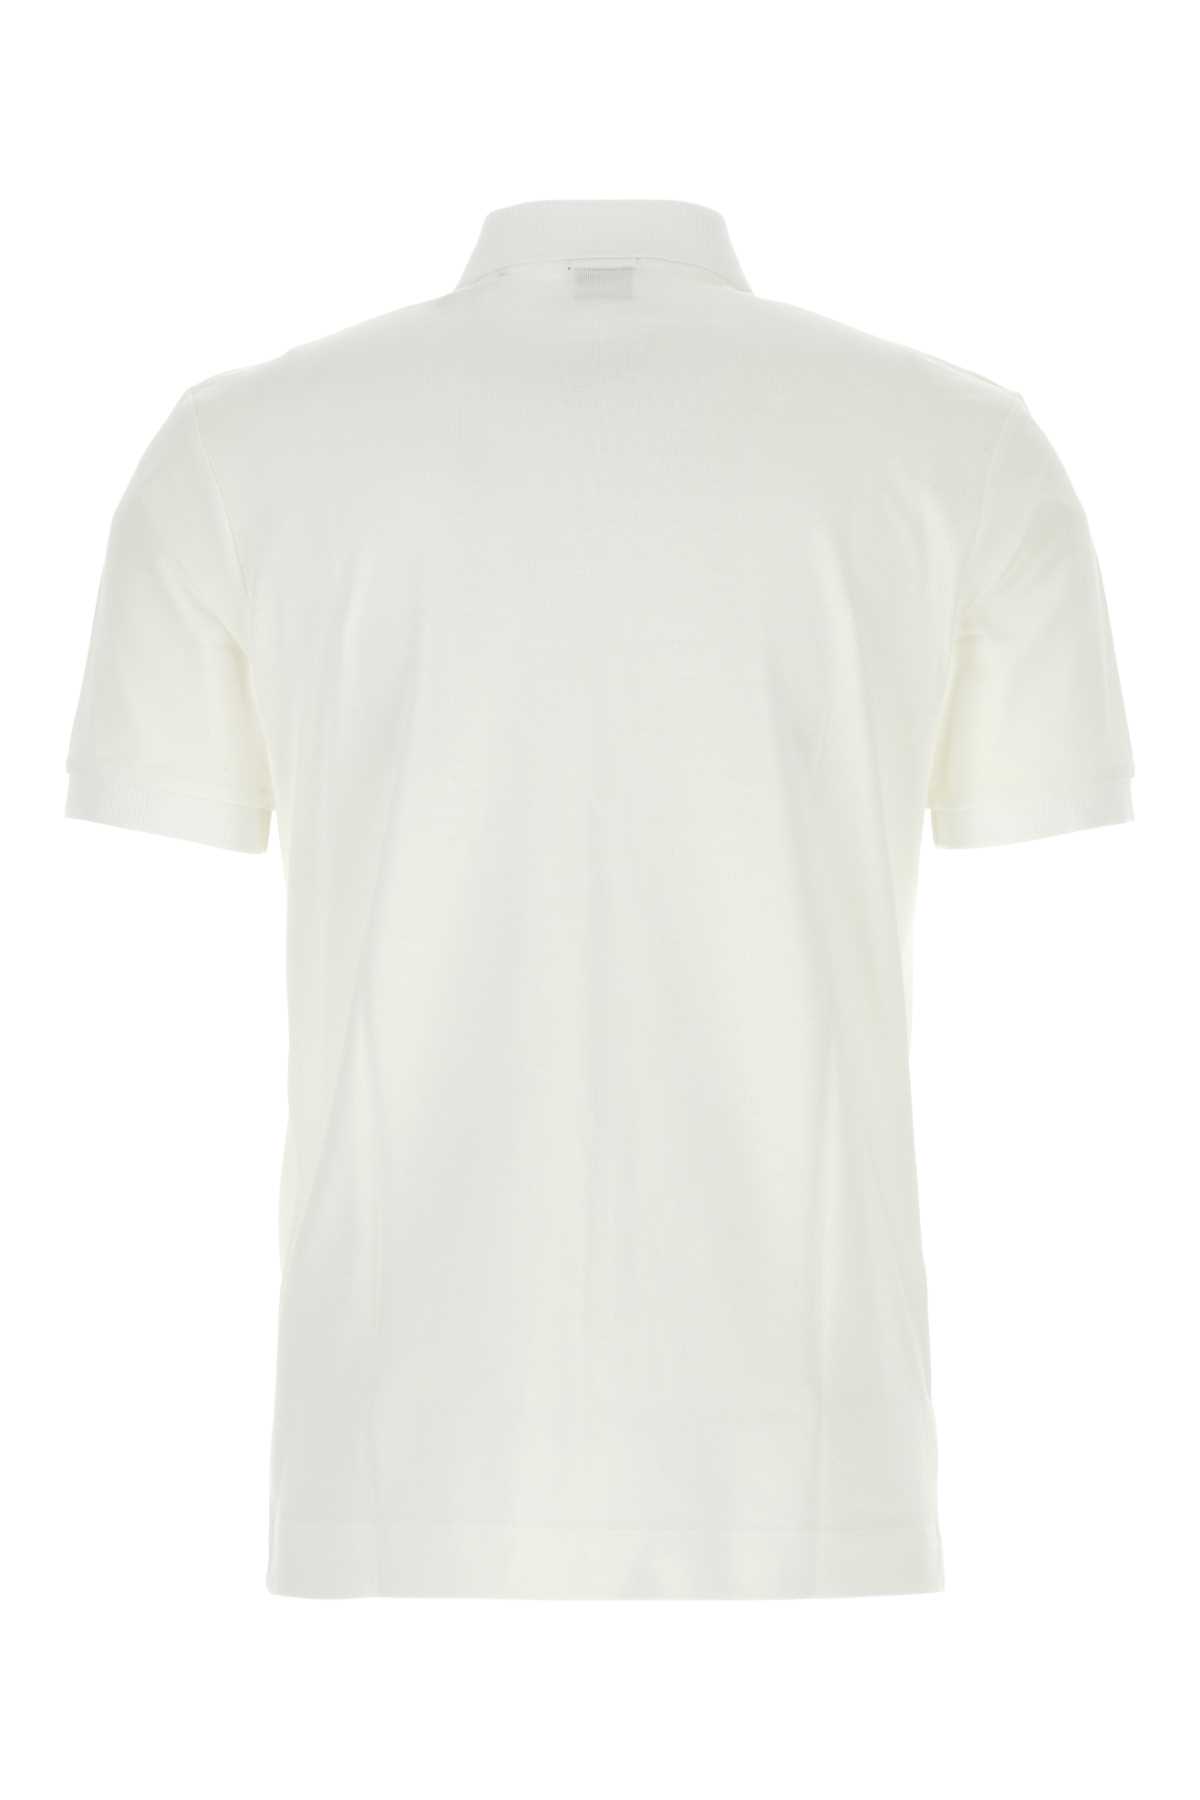 Shop Hugo Boss White Piquet Polo Shirt